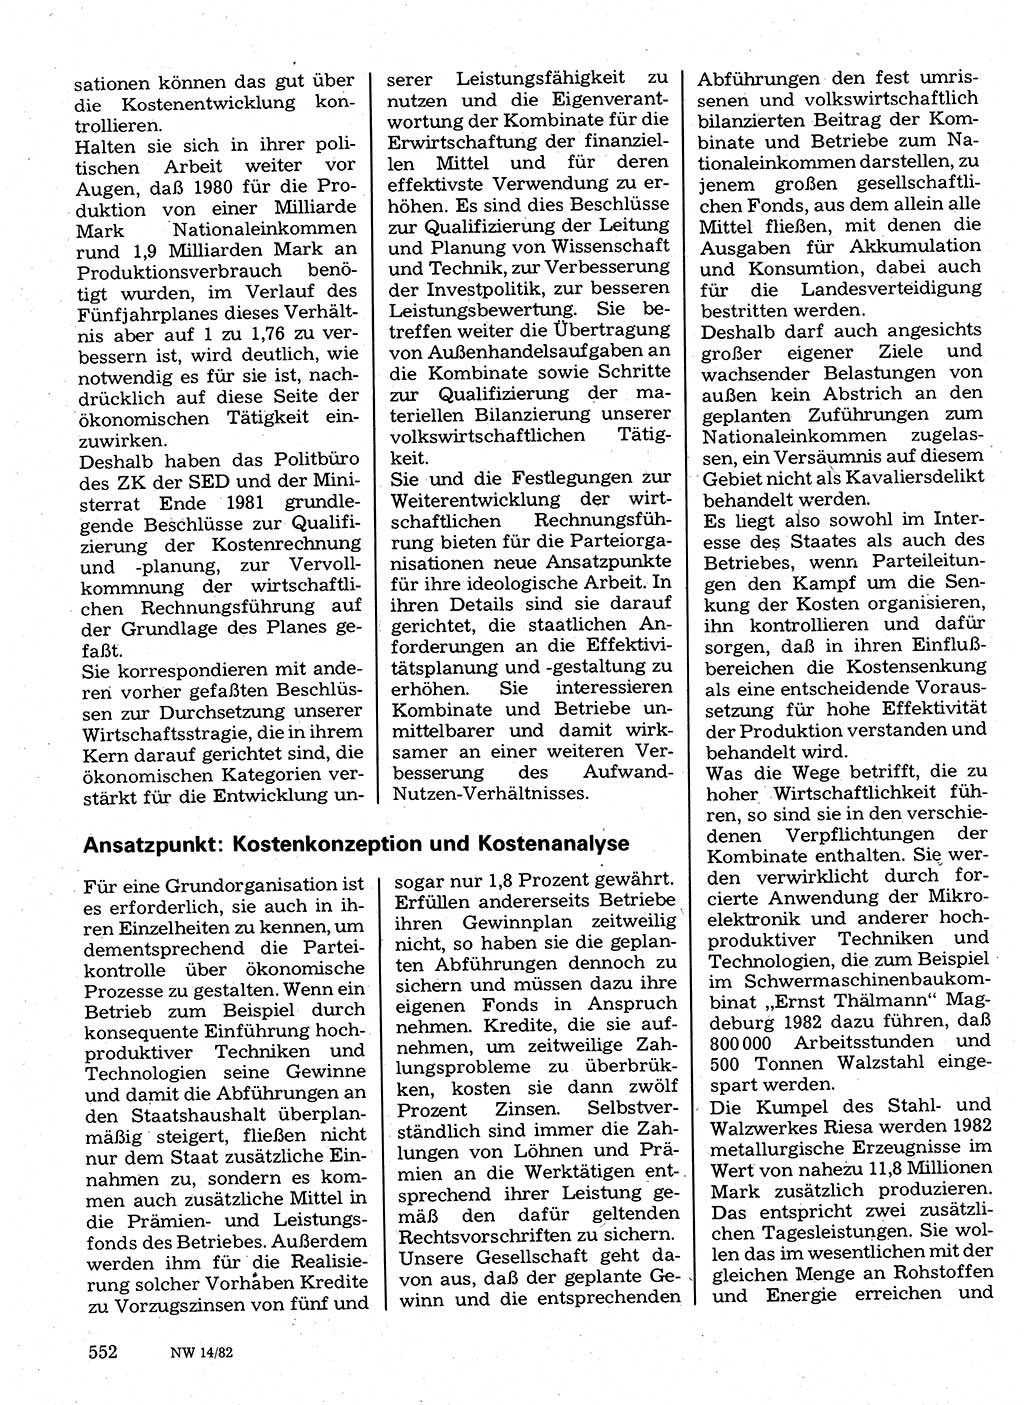 Neuer Weg (NW), Organ des Zentralkomitees (ZK) der SED (Sozialistische Einheitspartei Deutschlands) für Fragen des Parteilebens, 37. Jahrgang [Deutsche Demokratische Republik (DDR)] 1982, Seite 552 (NW ZK SED DDR 1982, S. 552)